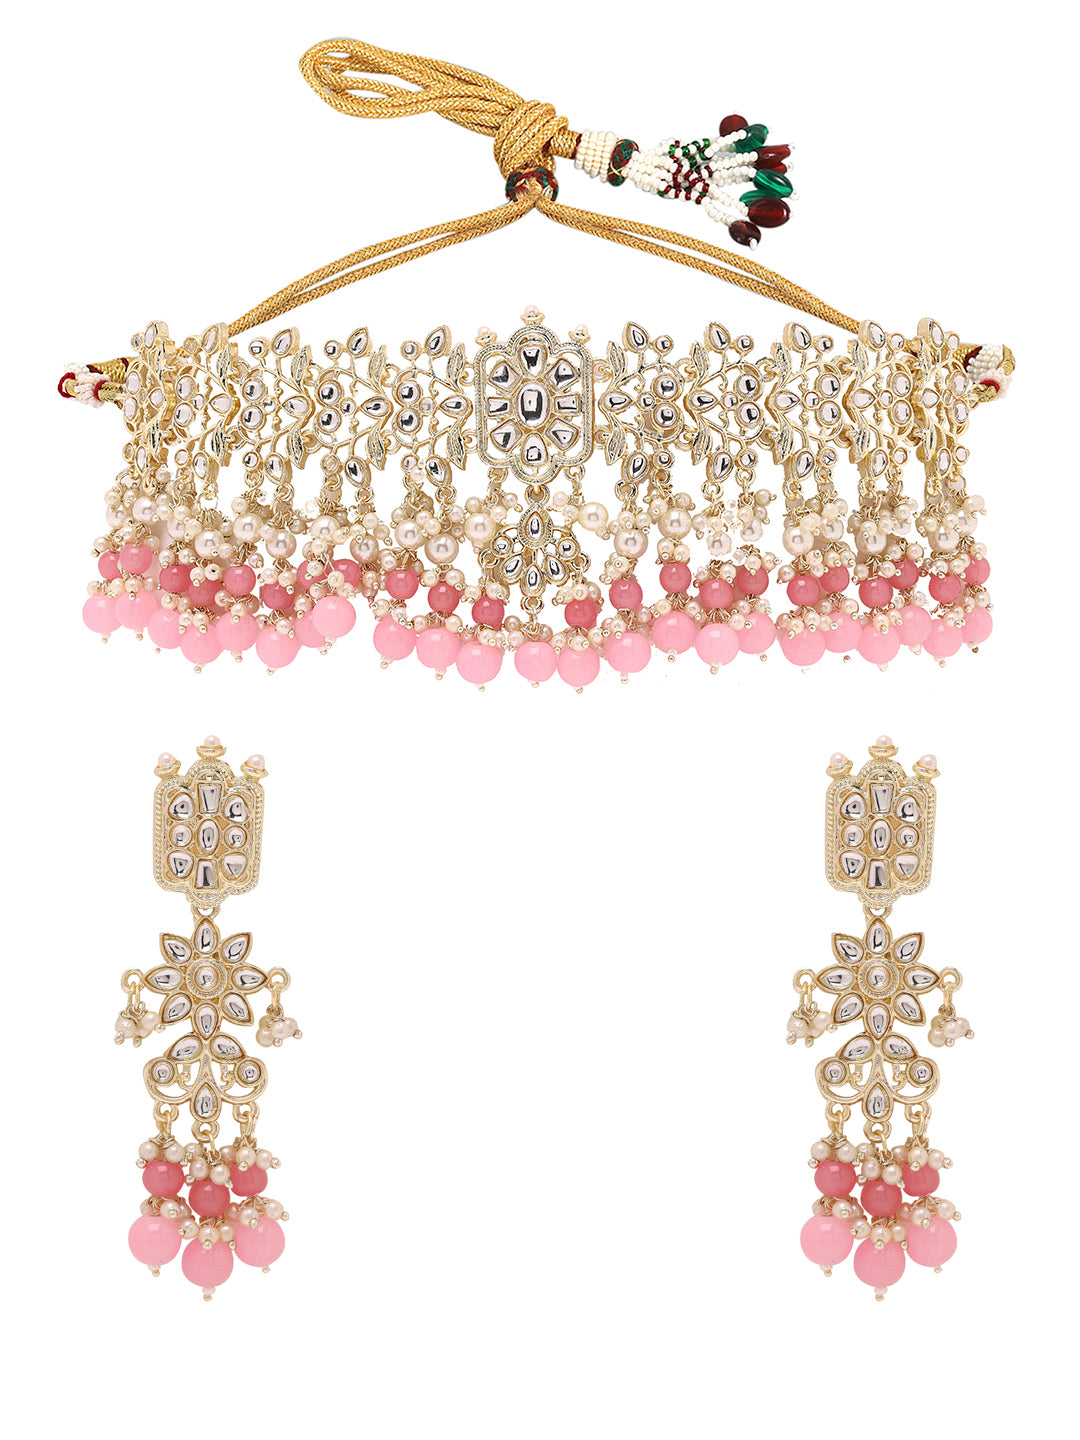 Priyaasi Kundans and Pink Stones Choker Set with Elegant Earrings